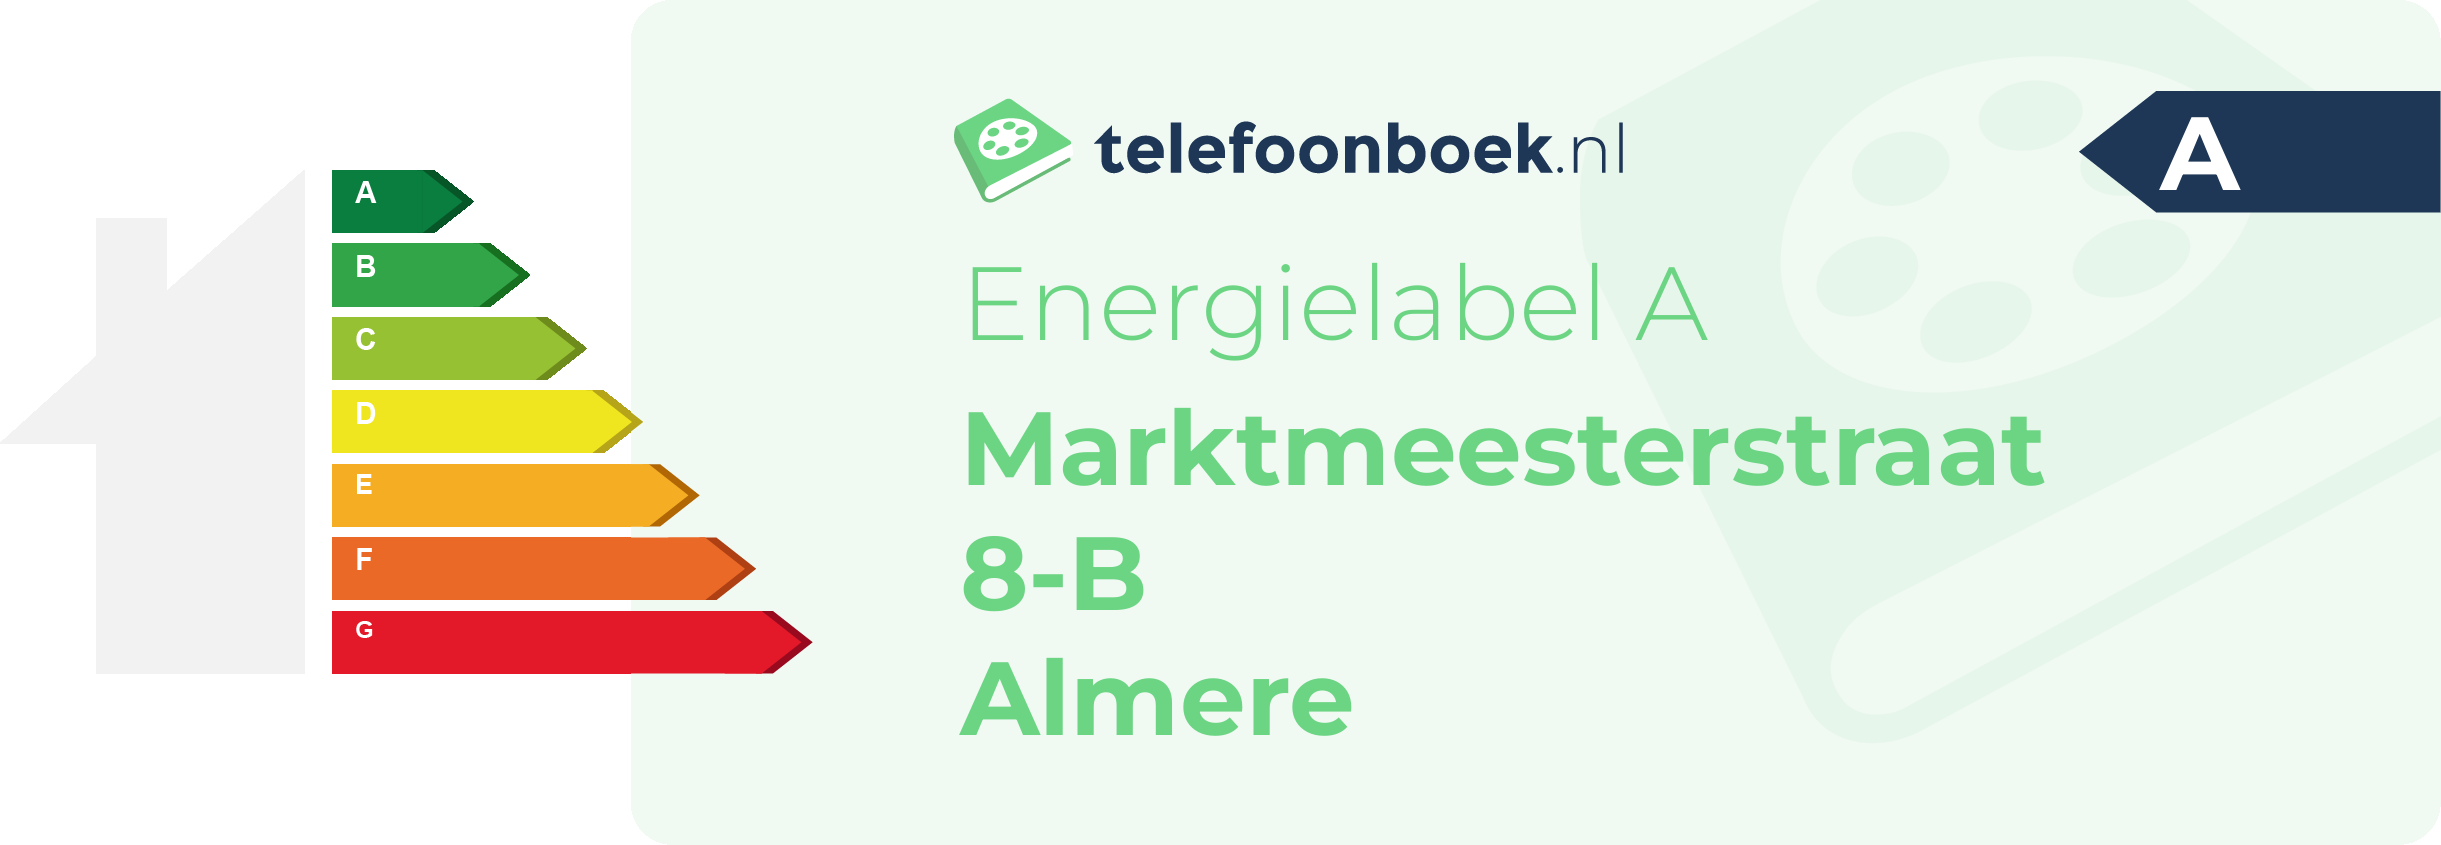 Energielabel Marktmeesterstraat 8-B Almere